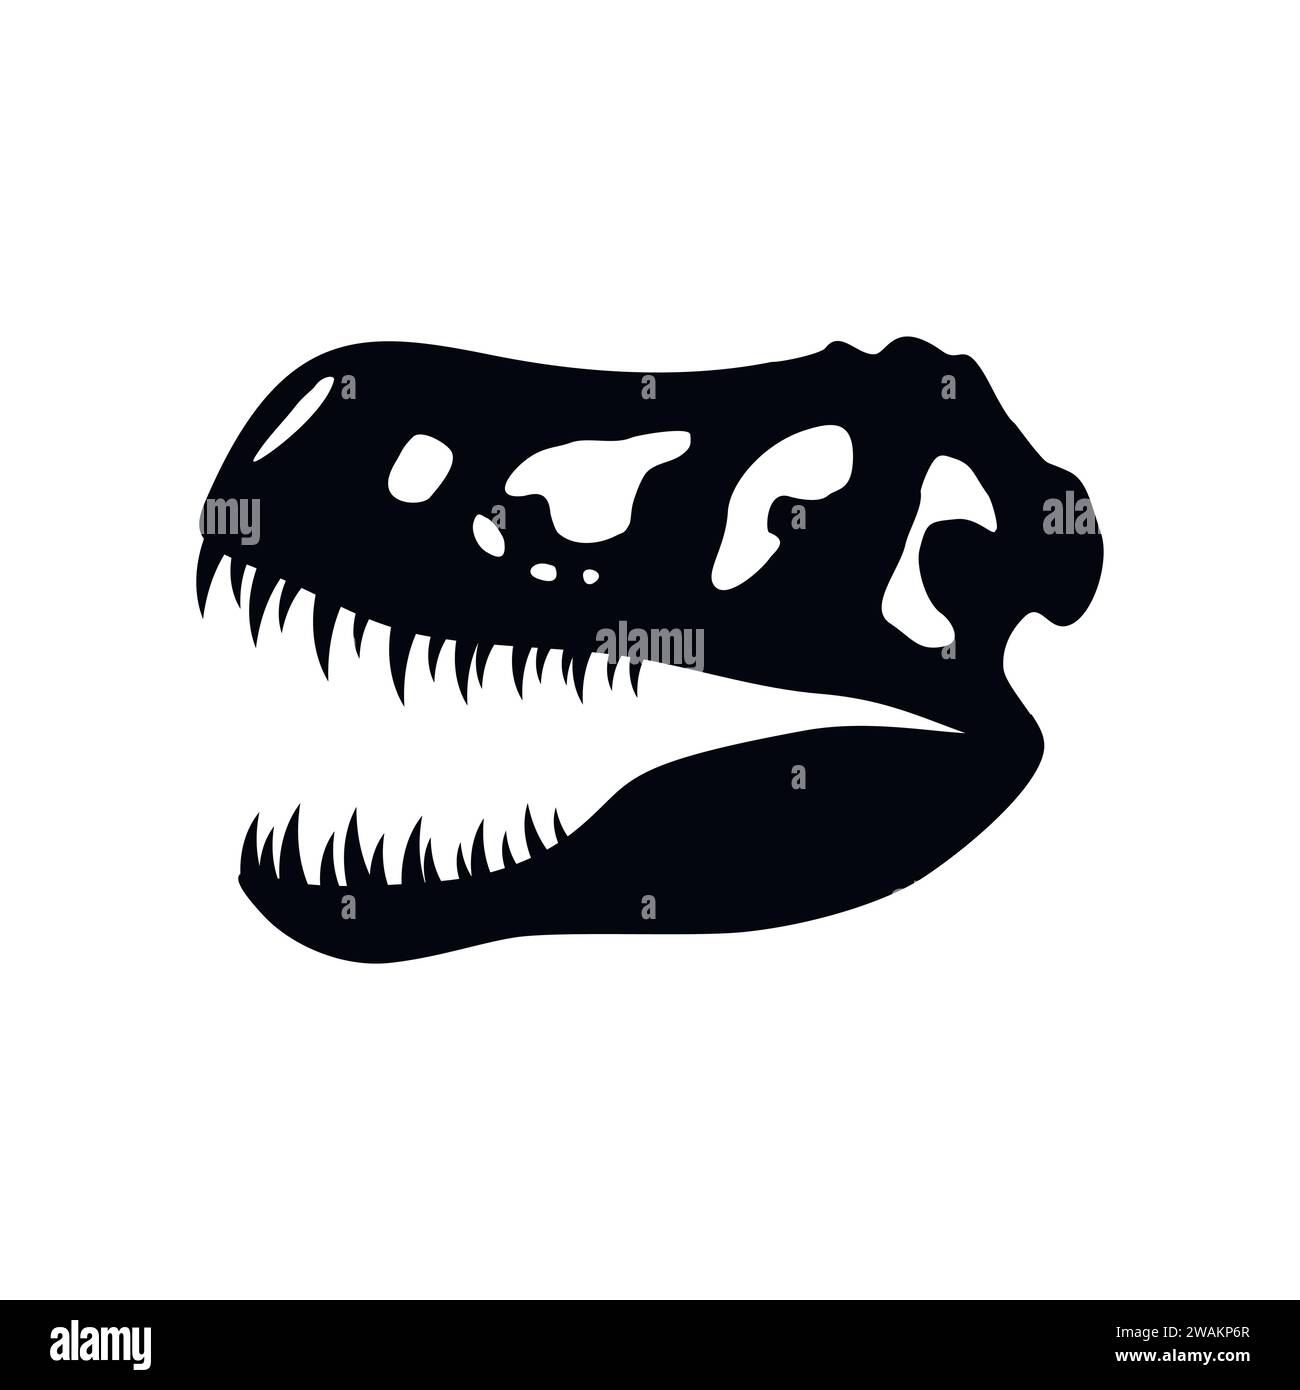 Dinosaurierschädelsymbol isoliert auf weißem Hintergrund, Tyrannosaurus Rex Kopf Fossil. Antike Überreste von Dino-Skelett, prähistorisches Reptil, Paläontologie Stock Vektor